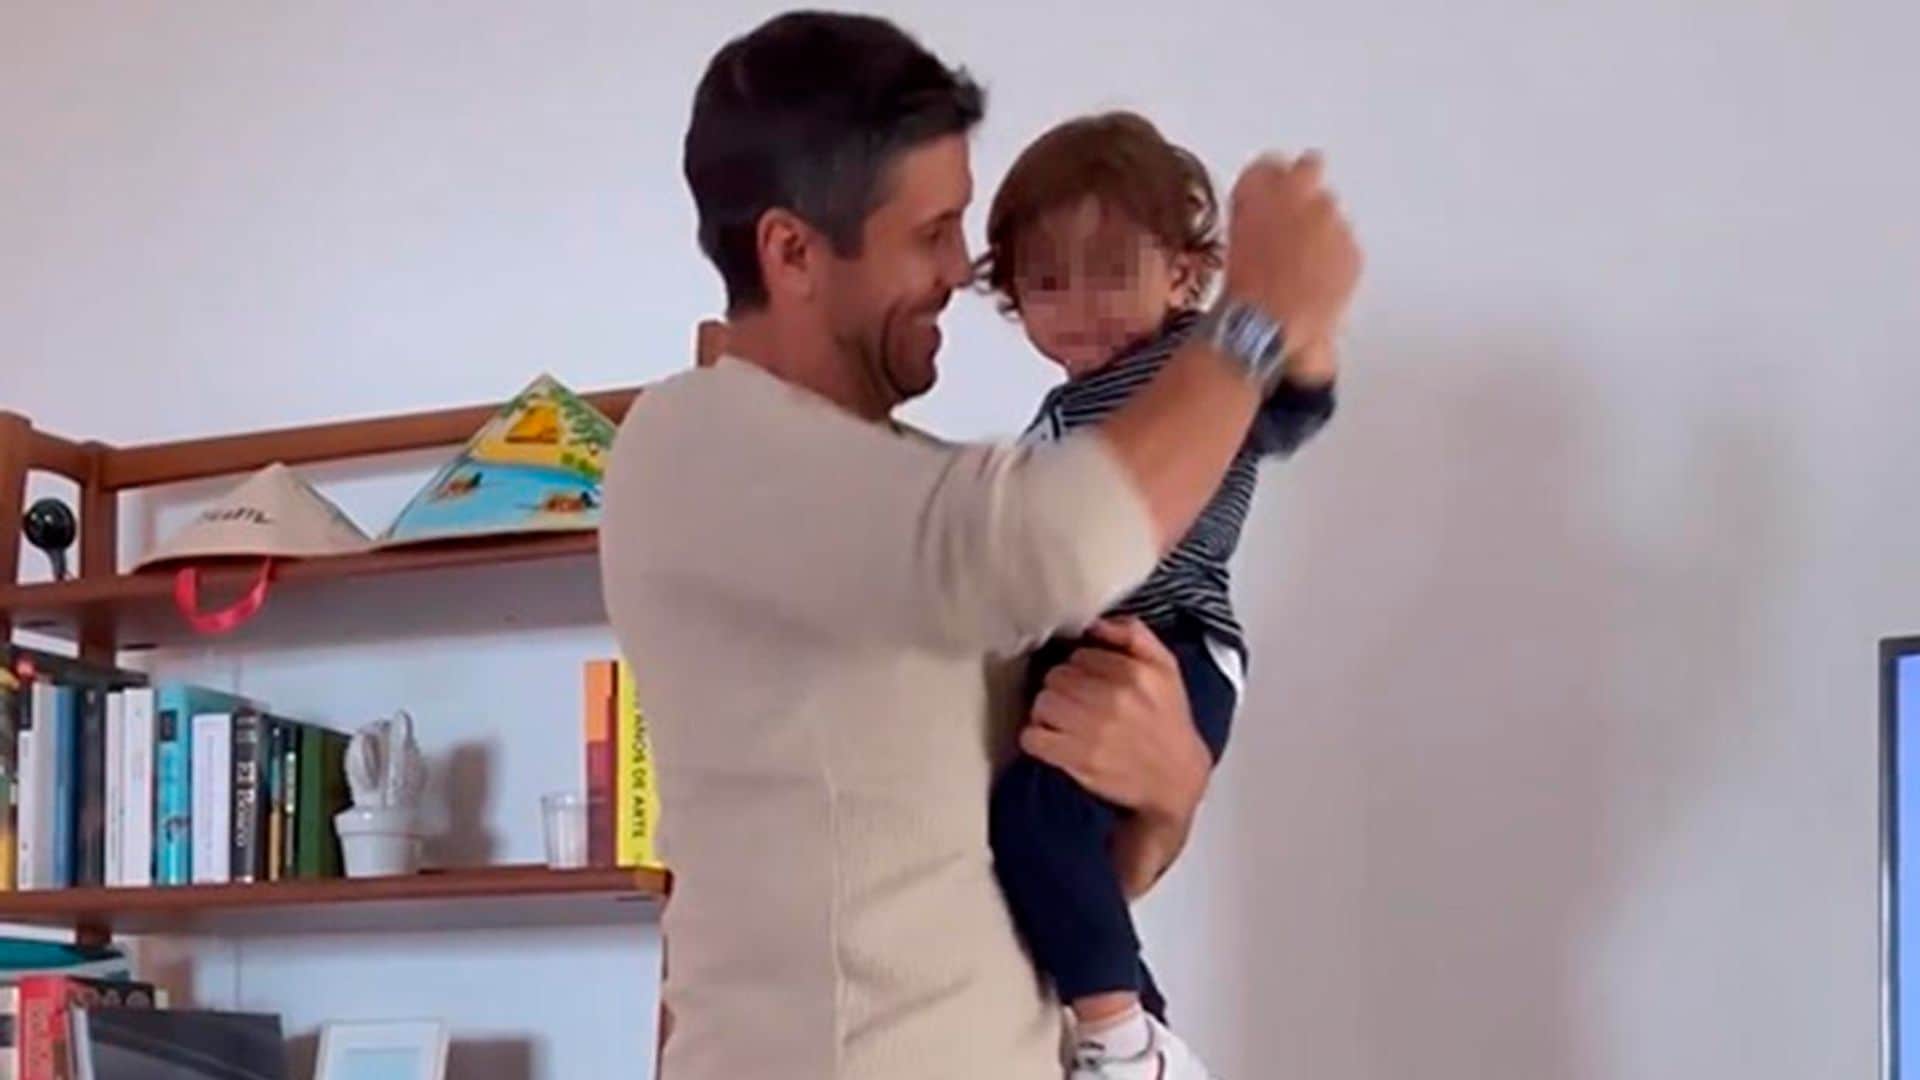 Ana Boyer comparte el vídeo más divertido de Verdasco y su hijo Mateo bailando a ritmo de Enrique Iglesias